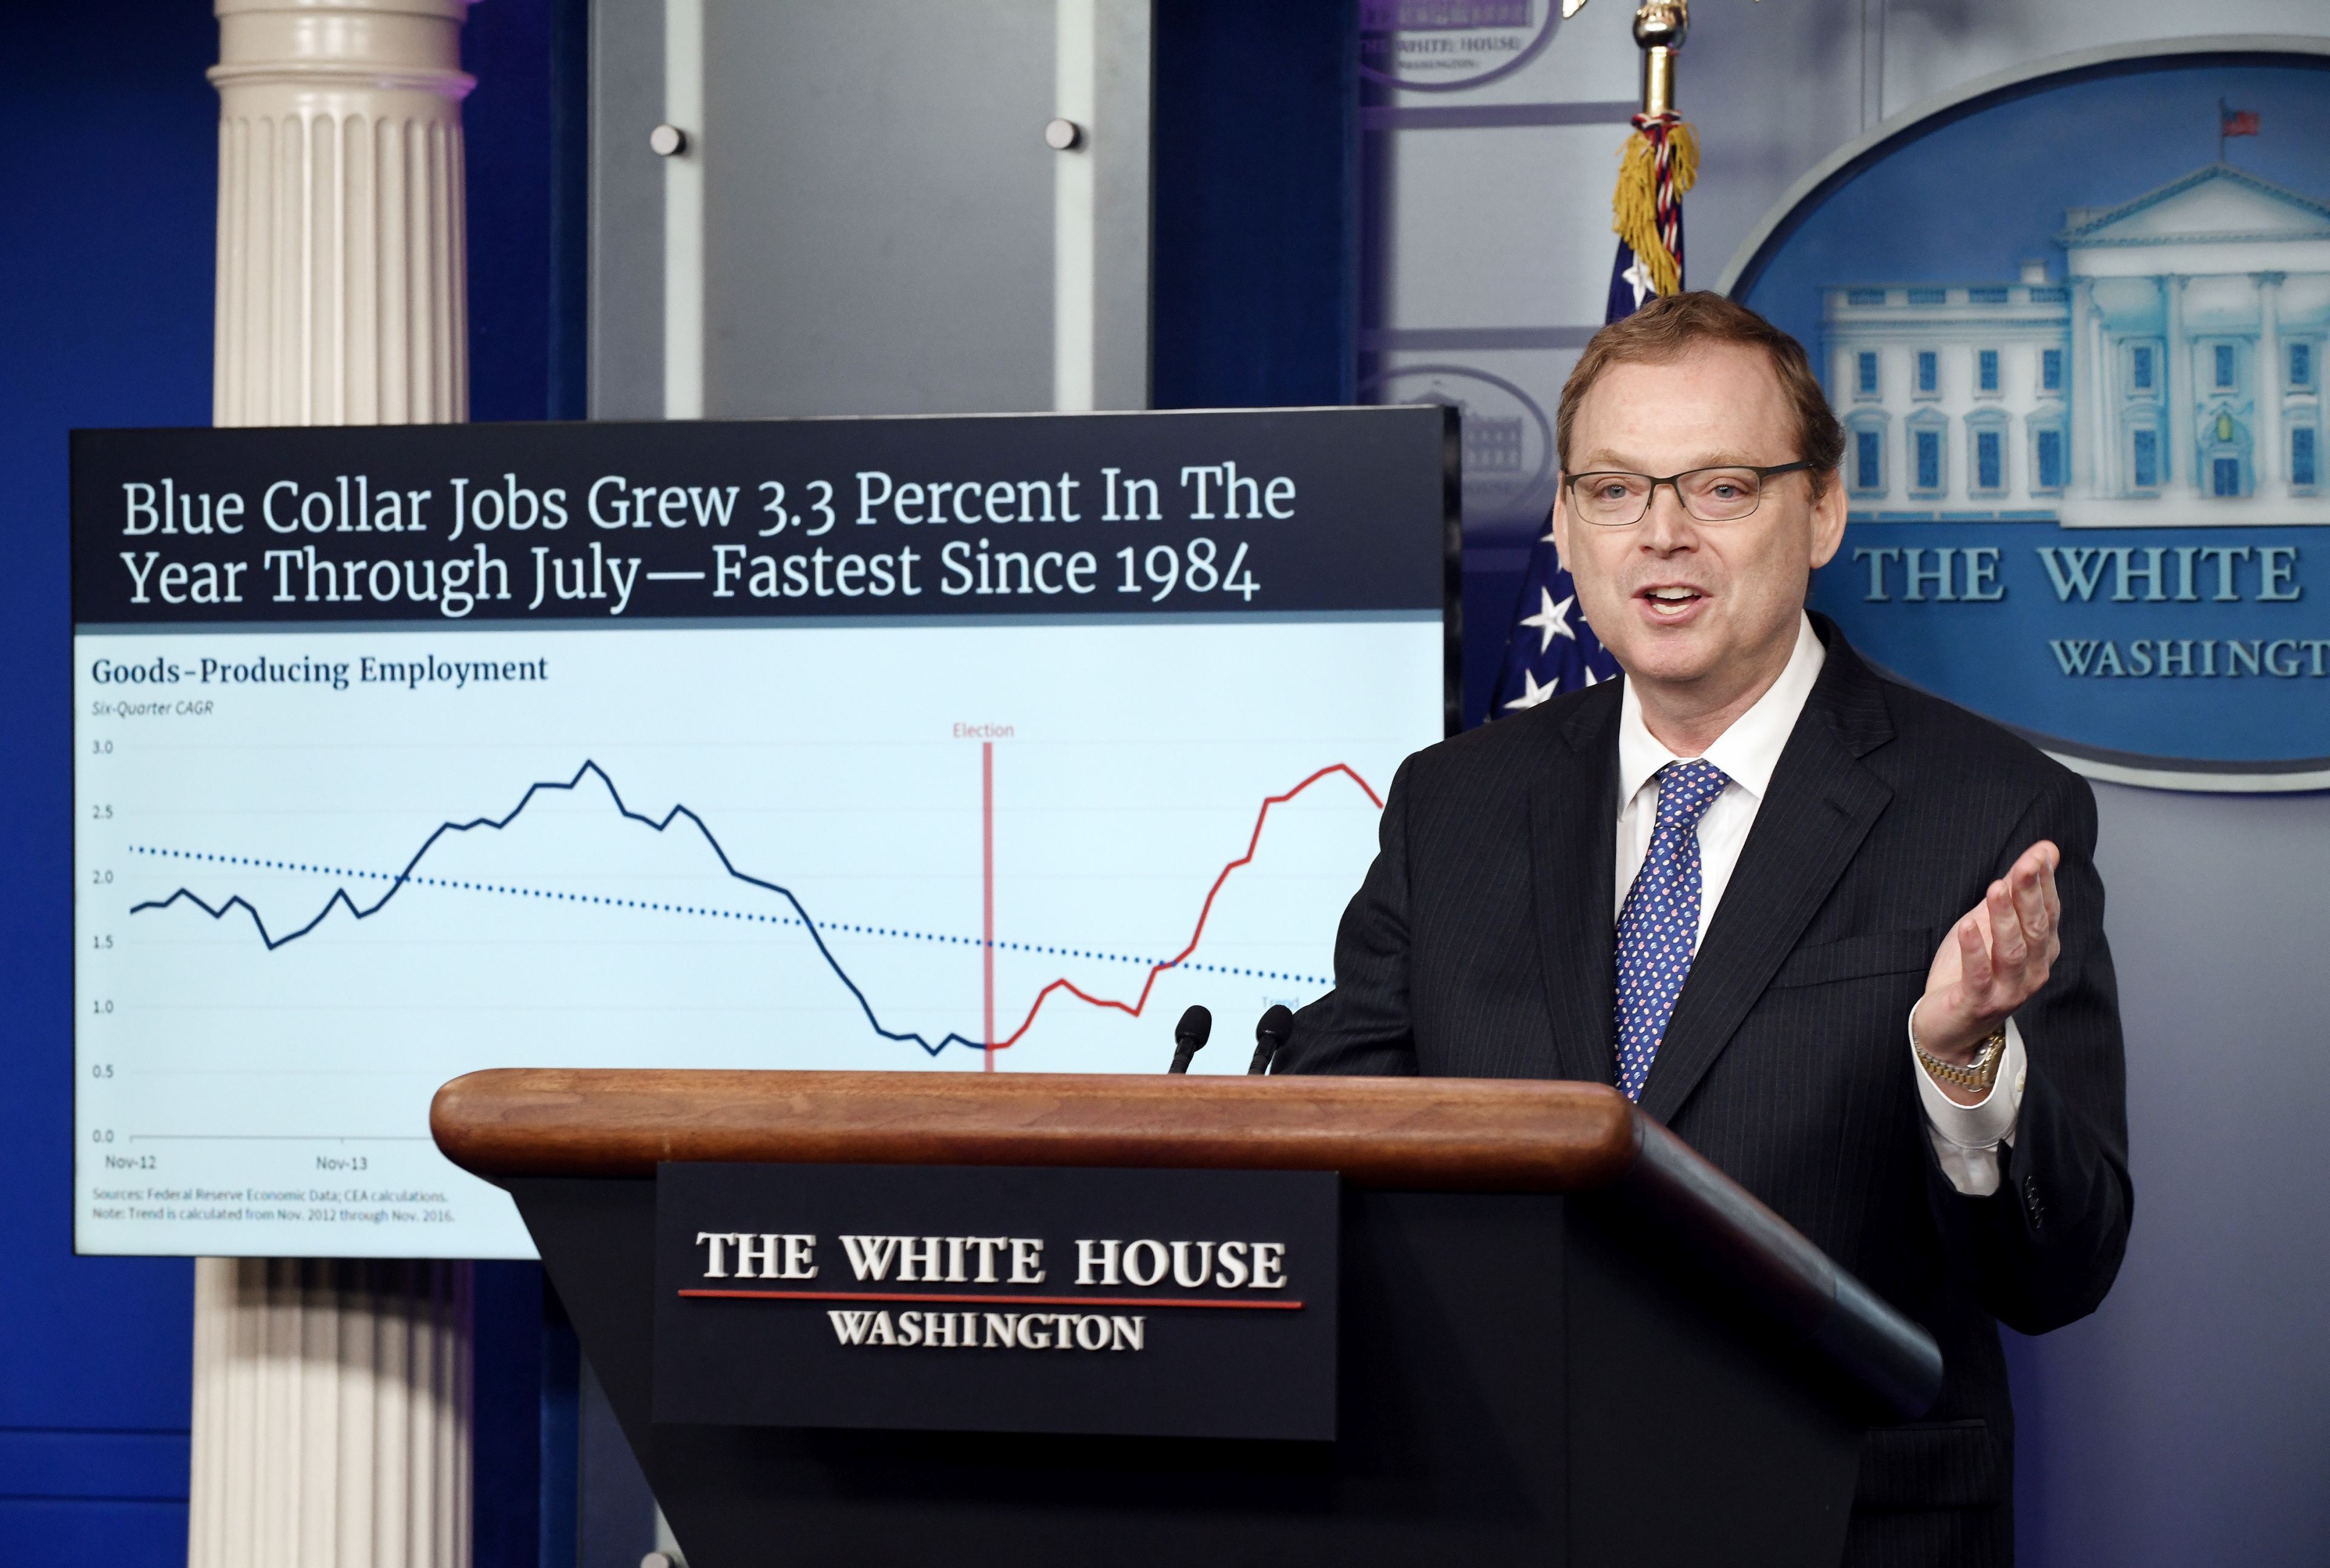 Kevin Hassett, consilierul pe probleme economice a lui Donald Trump: Economia SUA se confruntă cu un şoc istoric. Rata şomajului ar putea ajunge la 16%